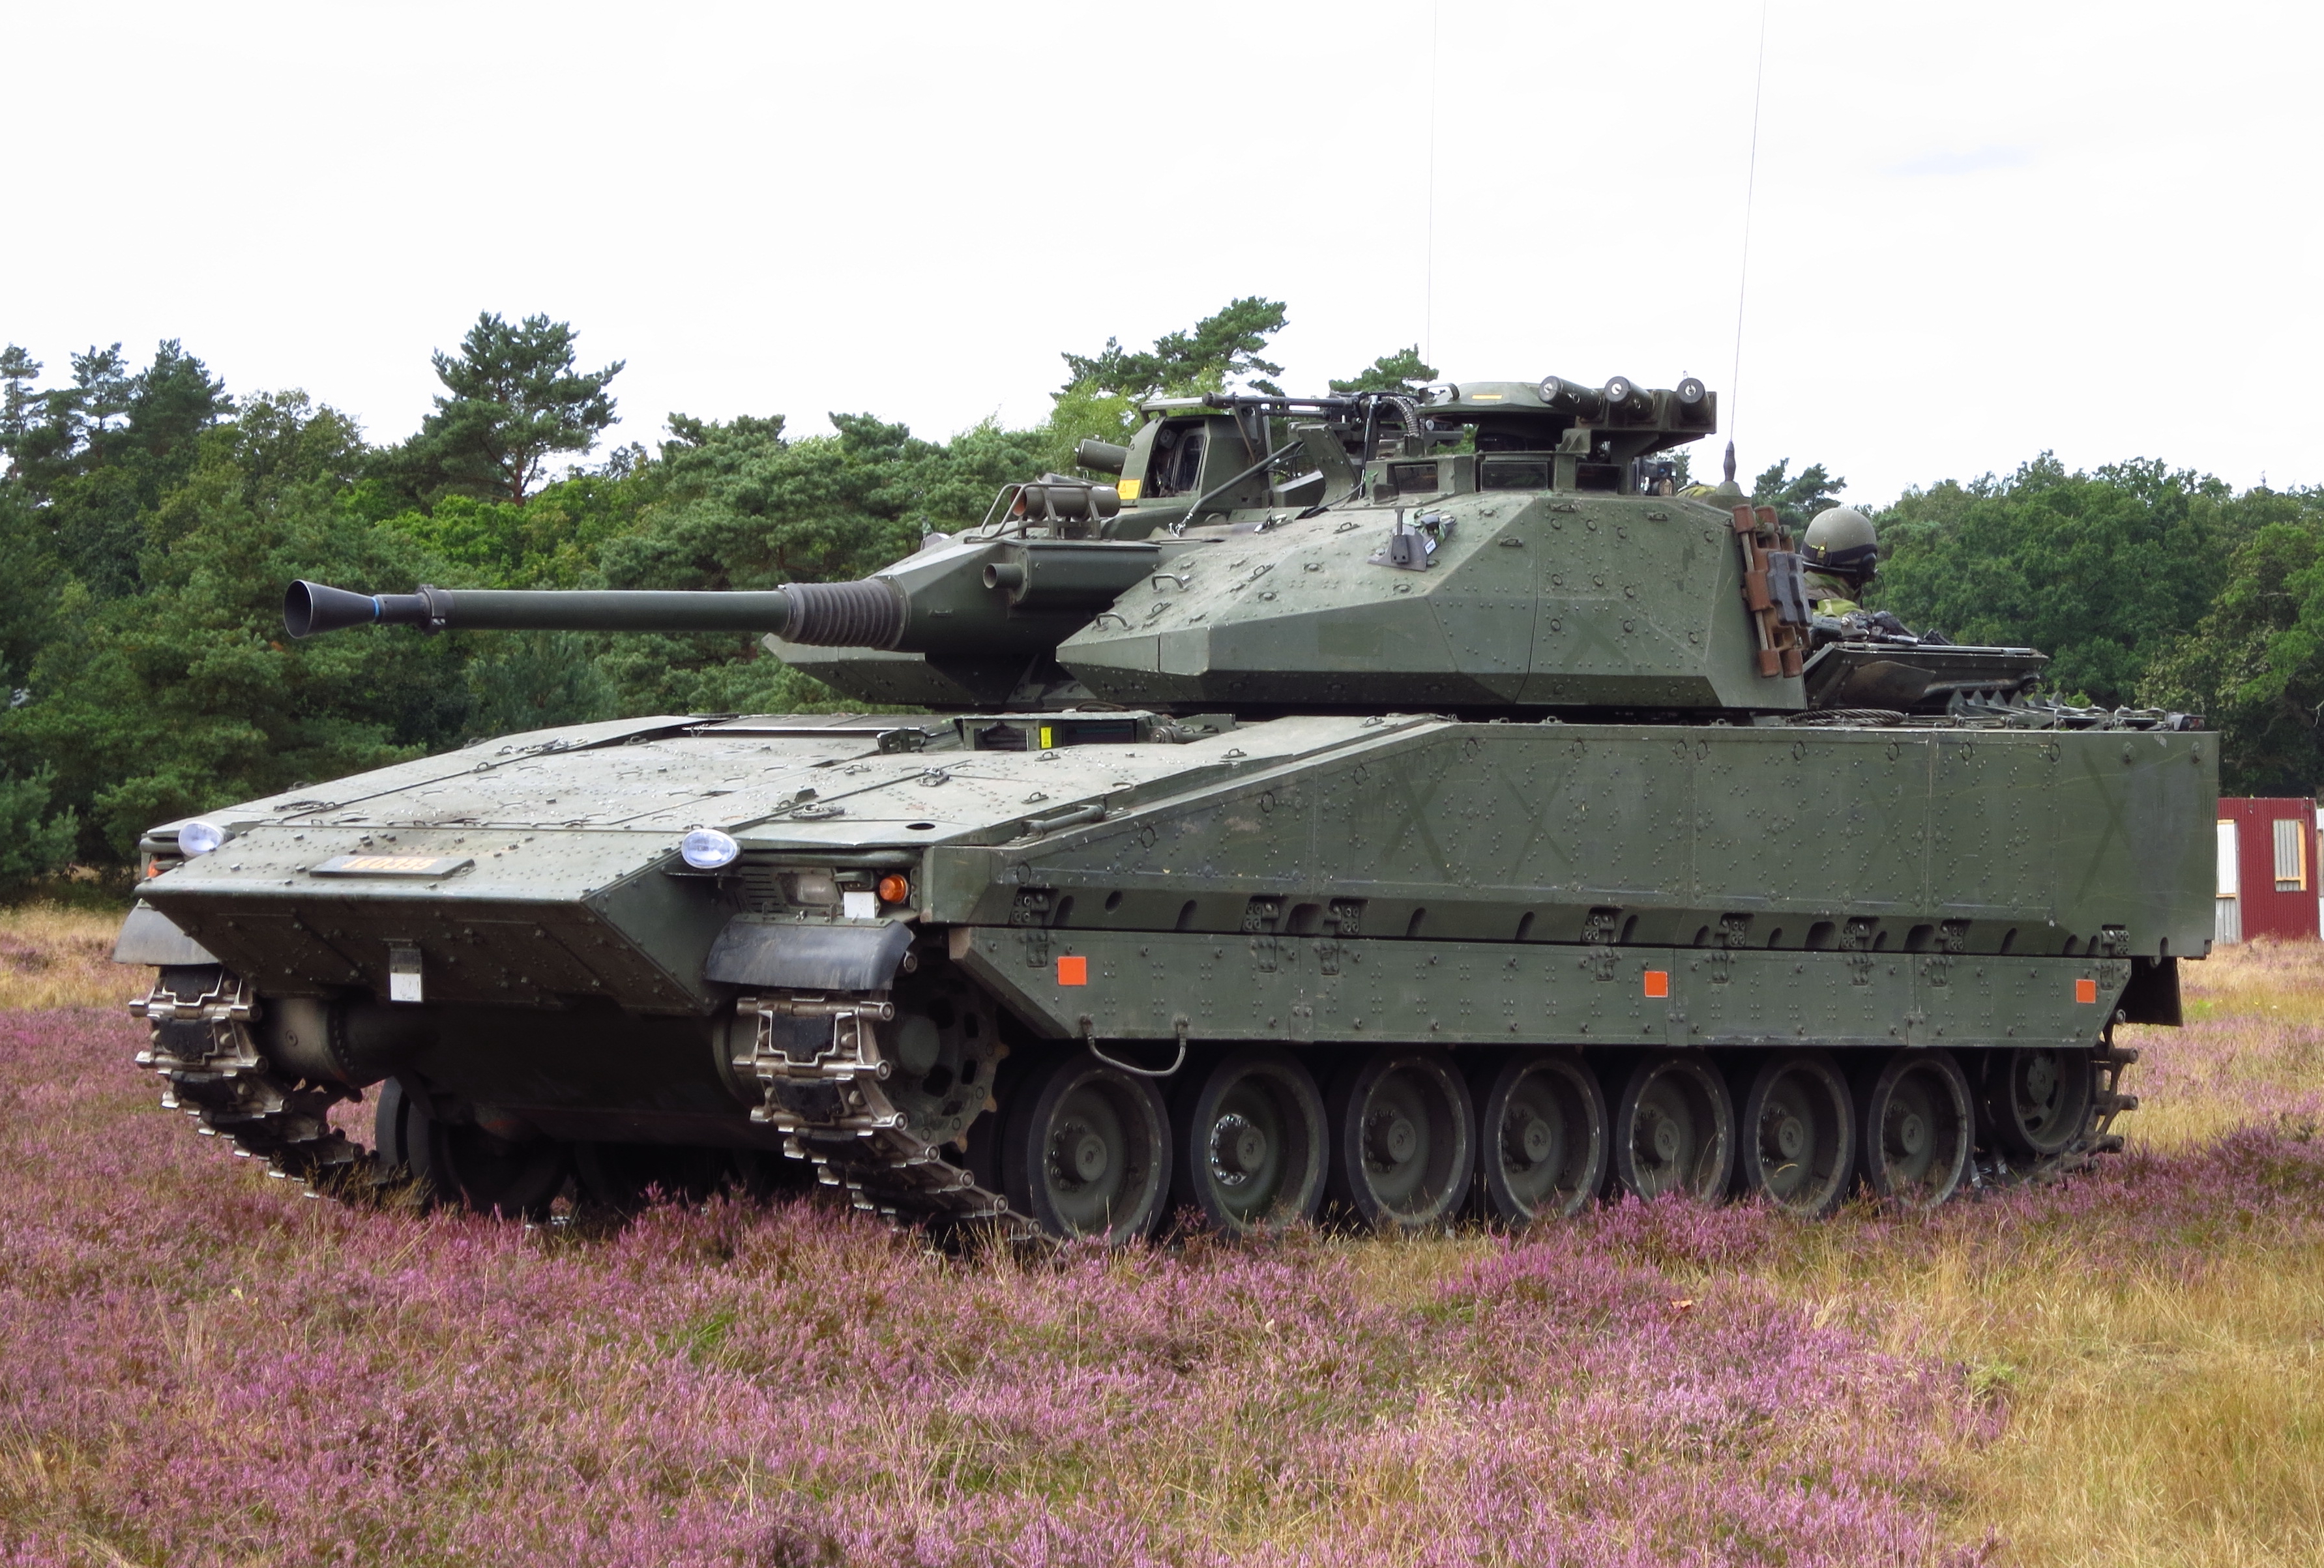 Swedish Stridsfordon 90 BMPs arrive in Ukraine - Reznikov